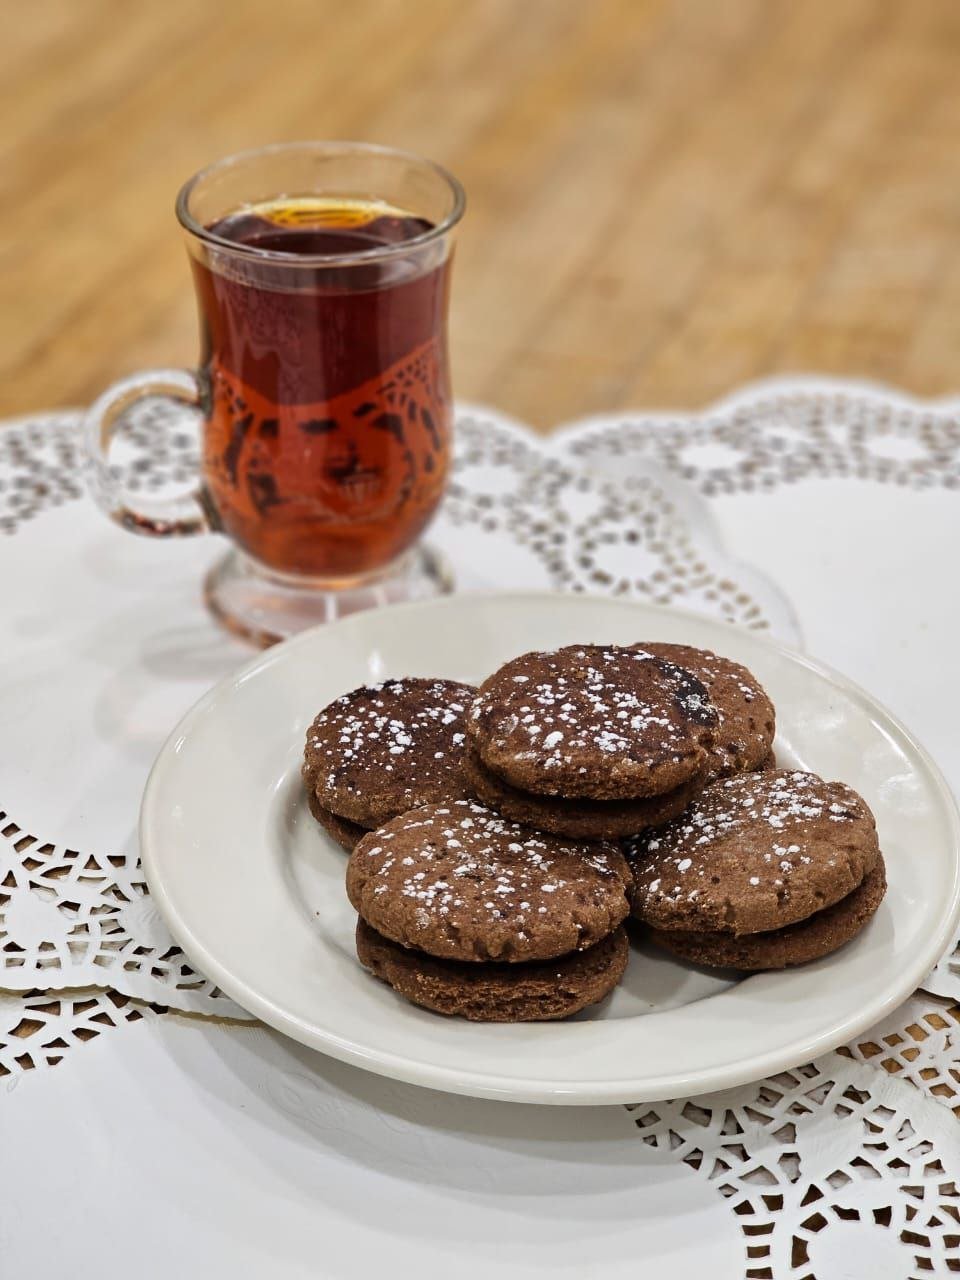 Chocolate cookie - 1 lb | کوکی شکلاتی